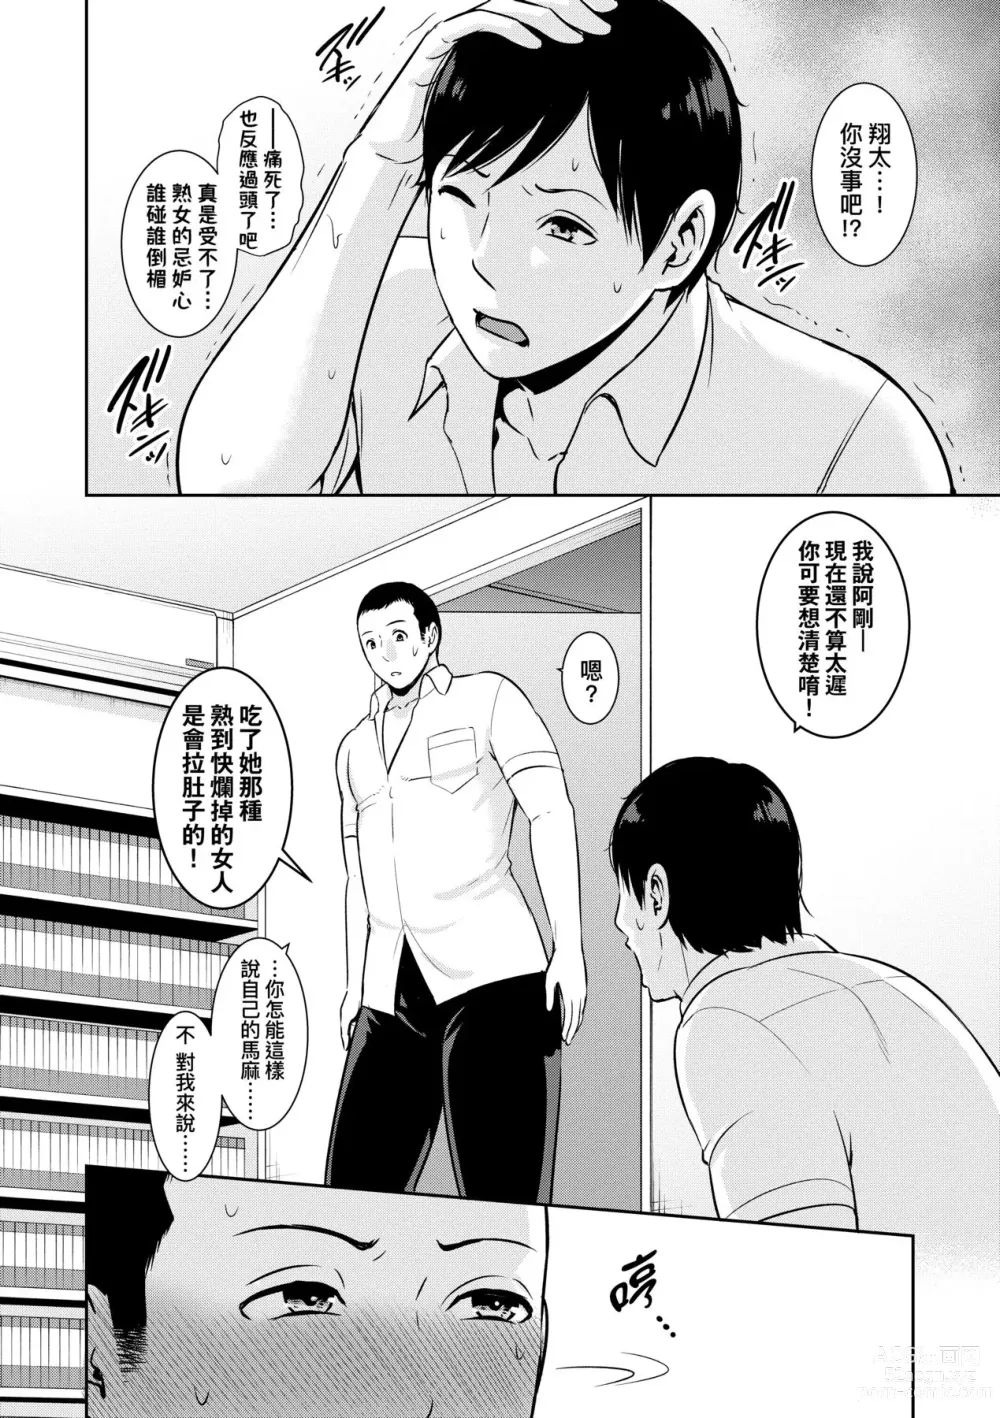 Page 9 of manga 續．朋友的馬麻 (decensored)